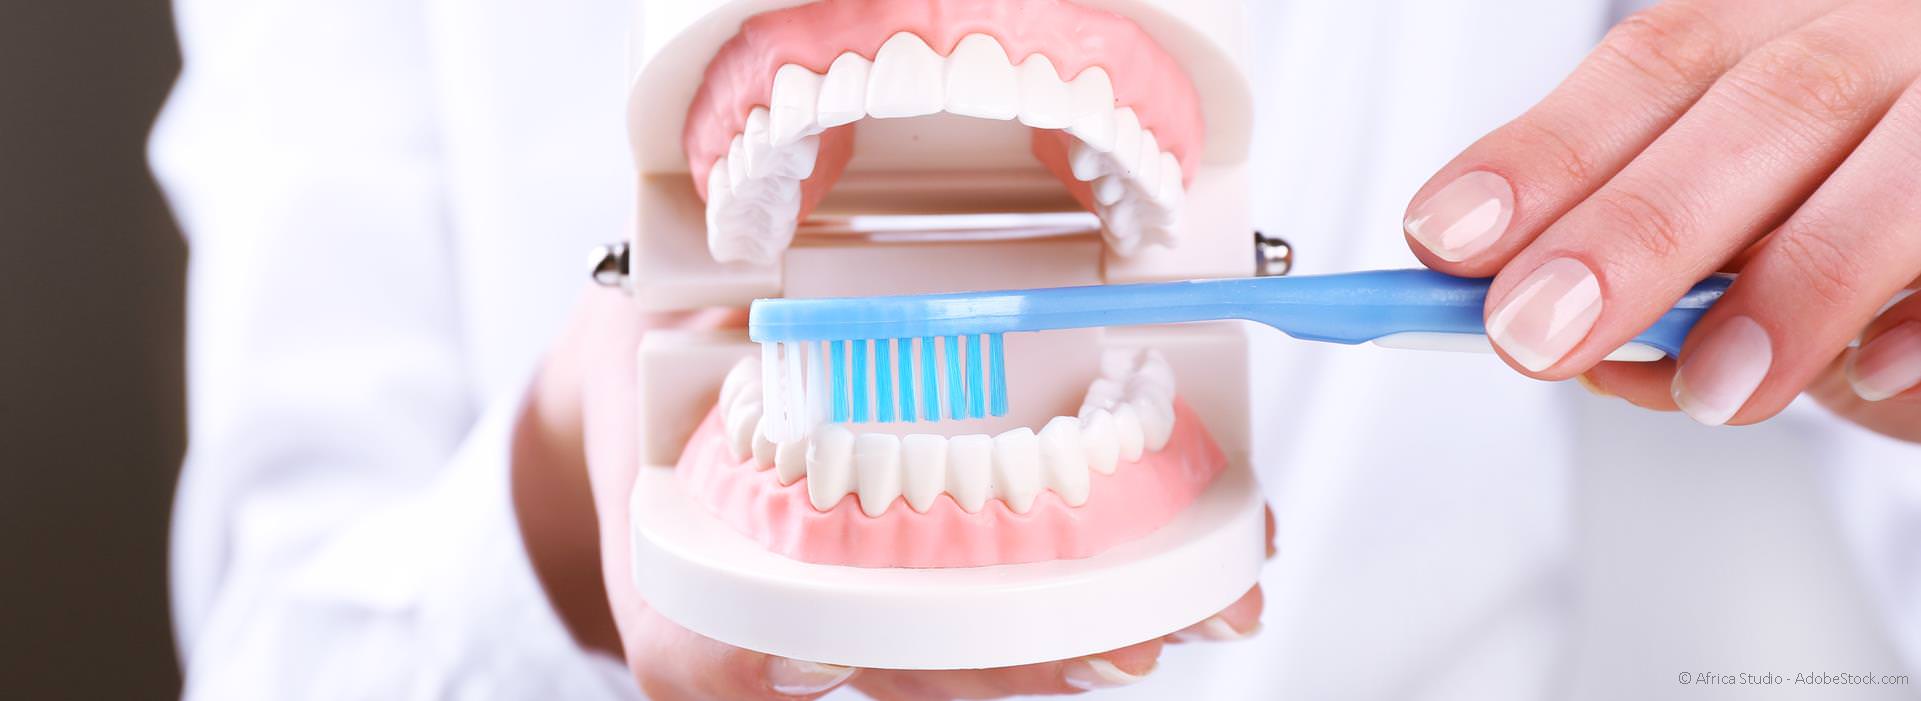 Tipps zur häuslichen Zahnpflege